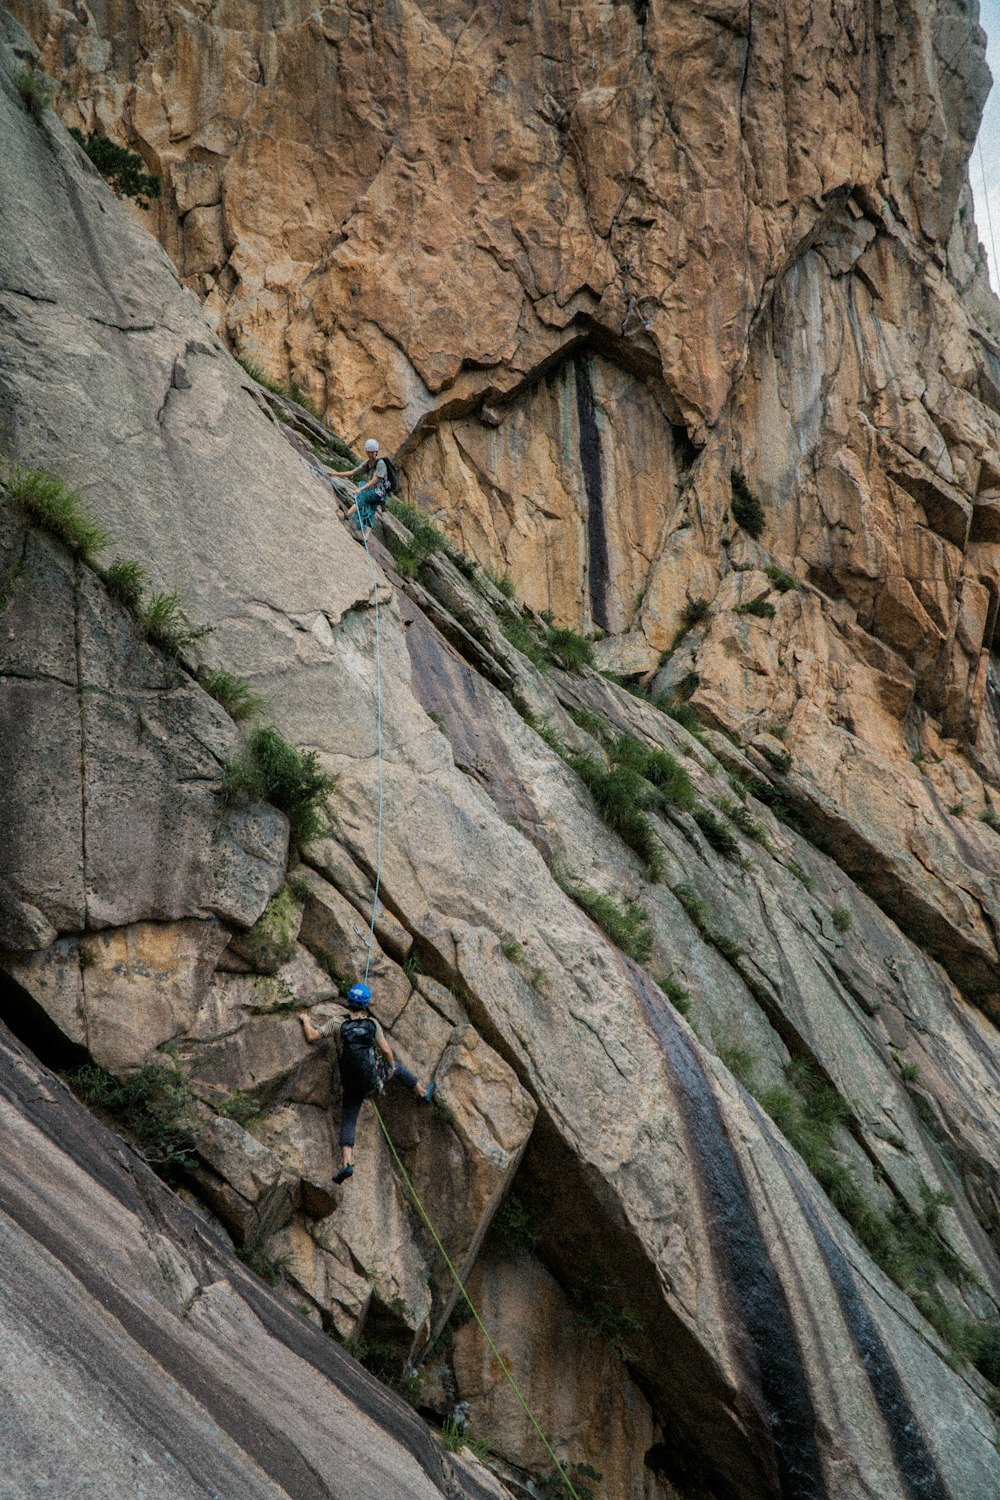 a person climbing up a steep rock face